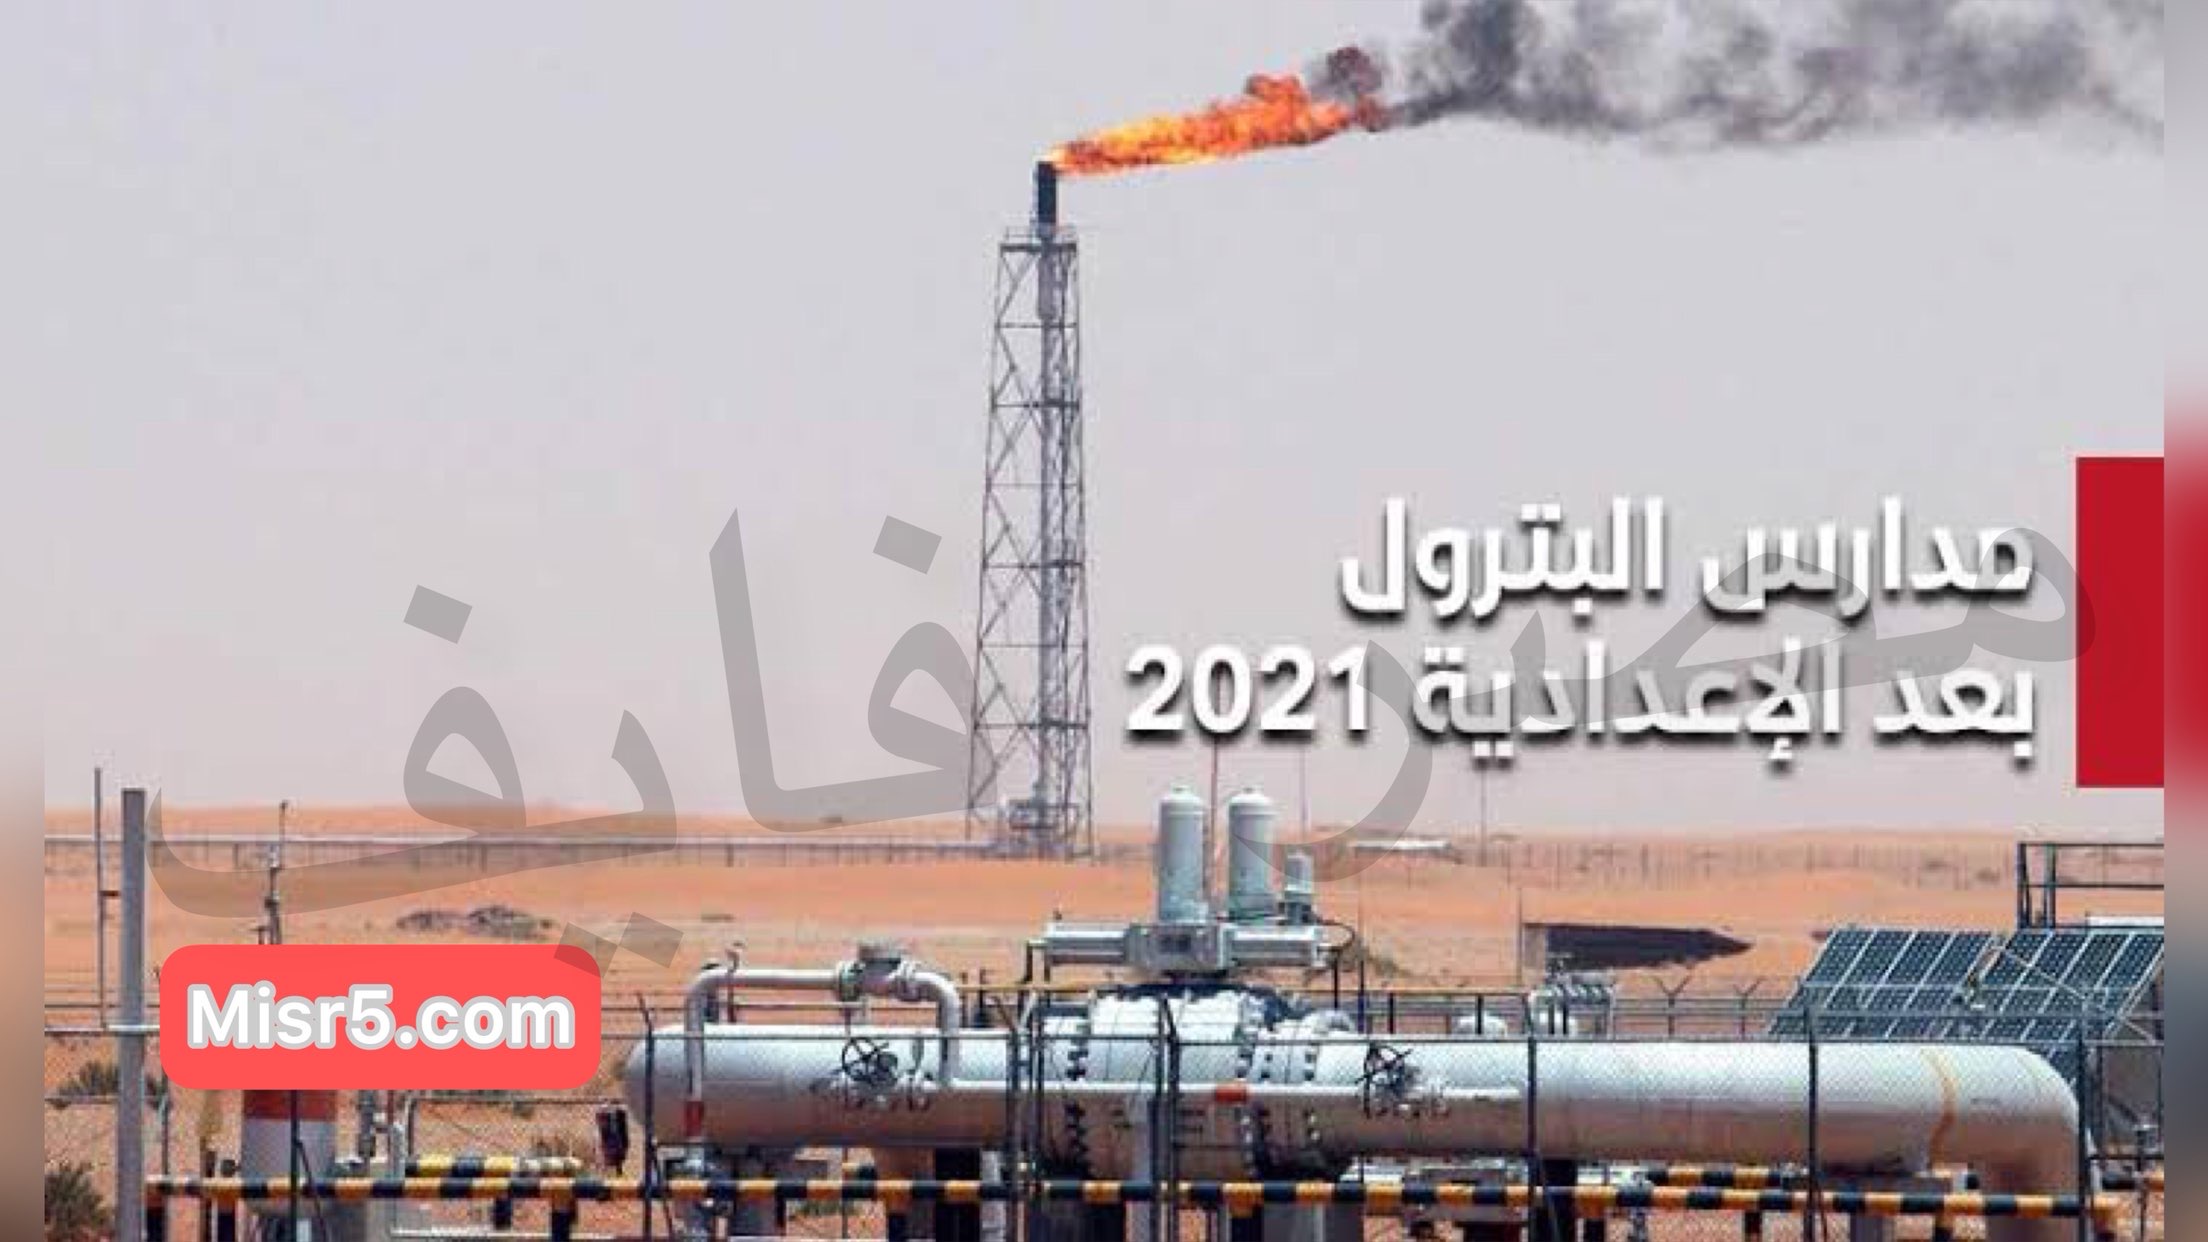 دليل تنسيق مدرسة البترول 2021 في مصر والأوراق وأماكن تواجدها